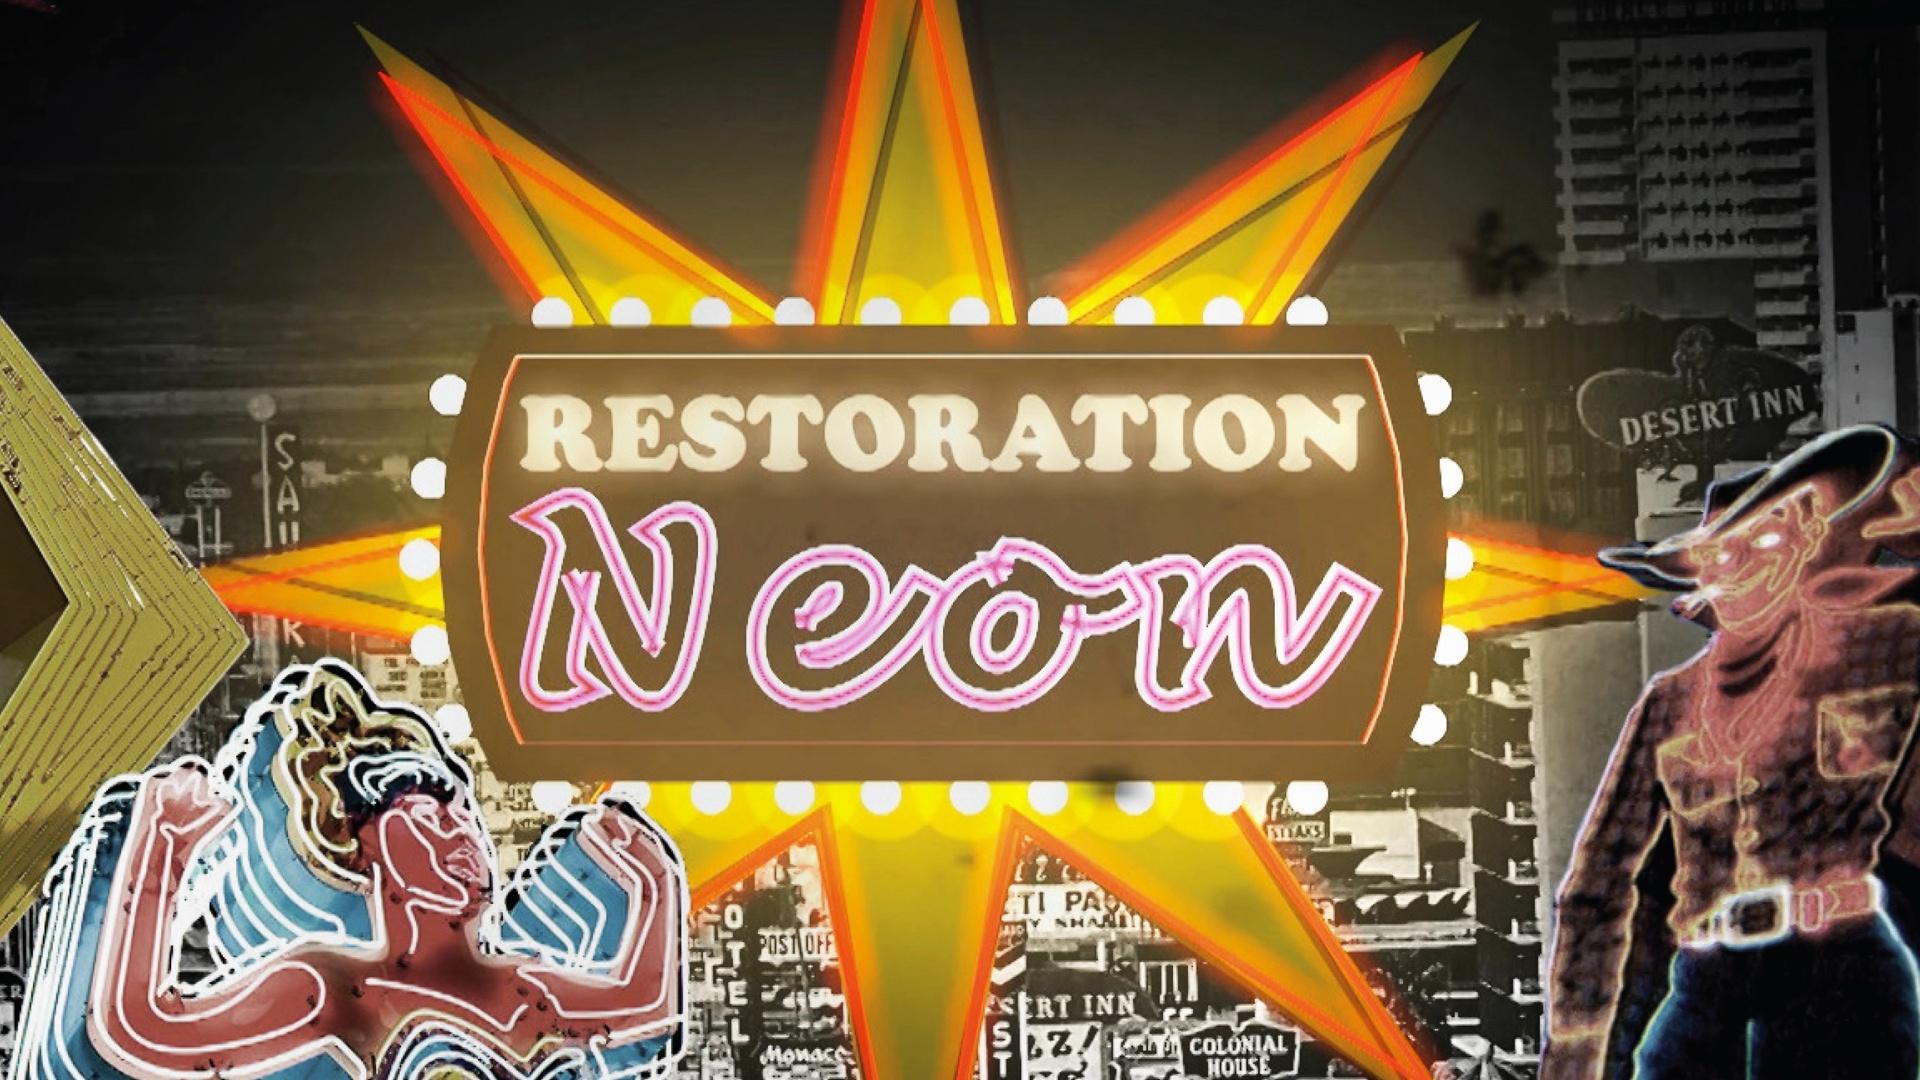 Restoration Neon